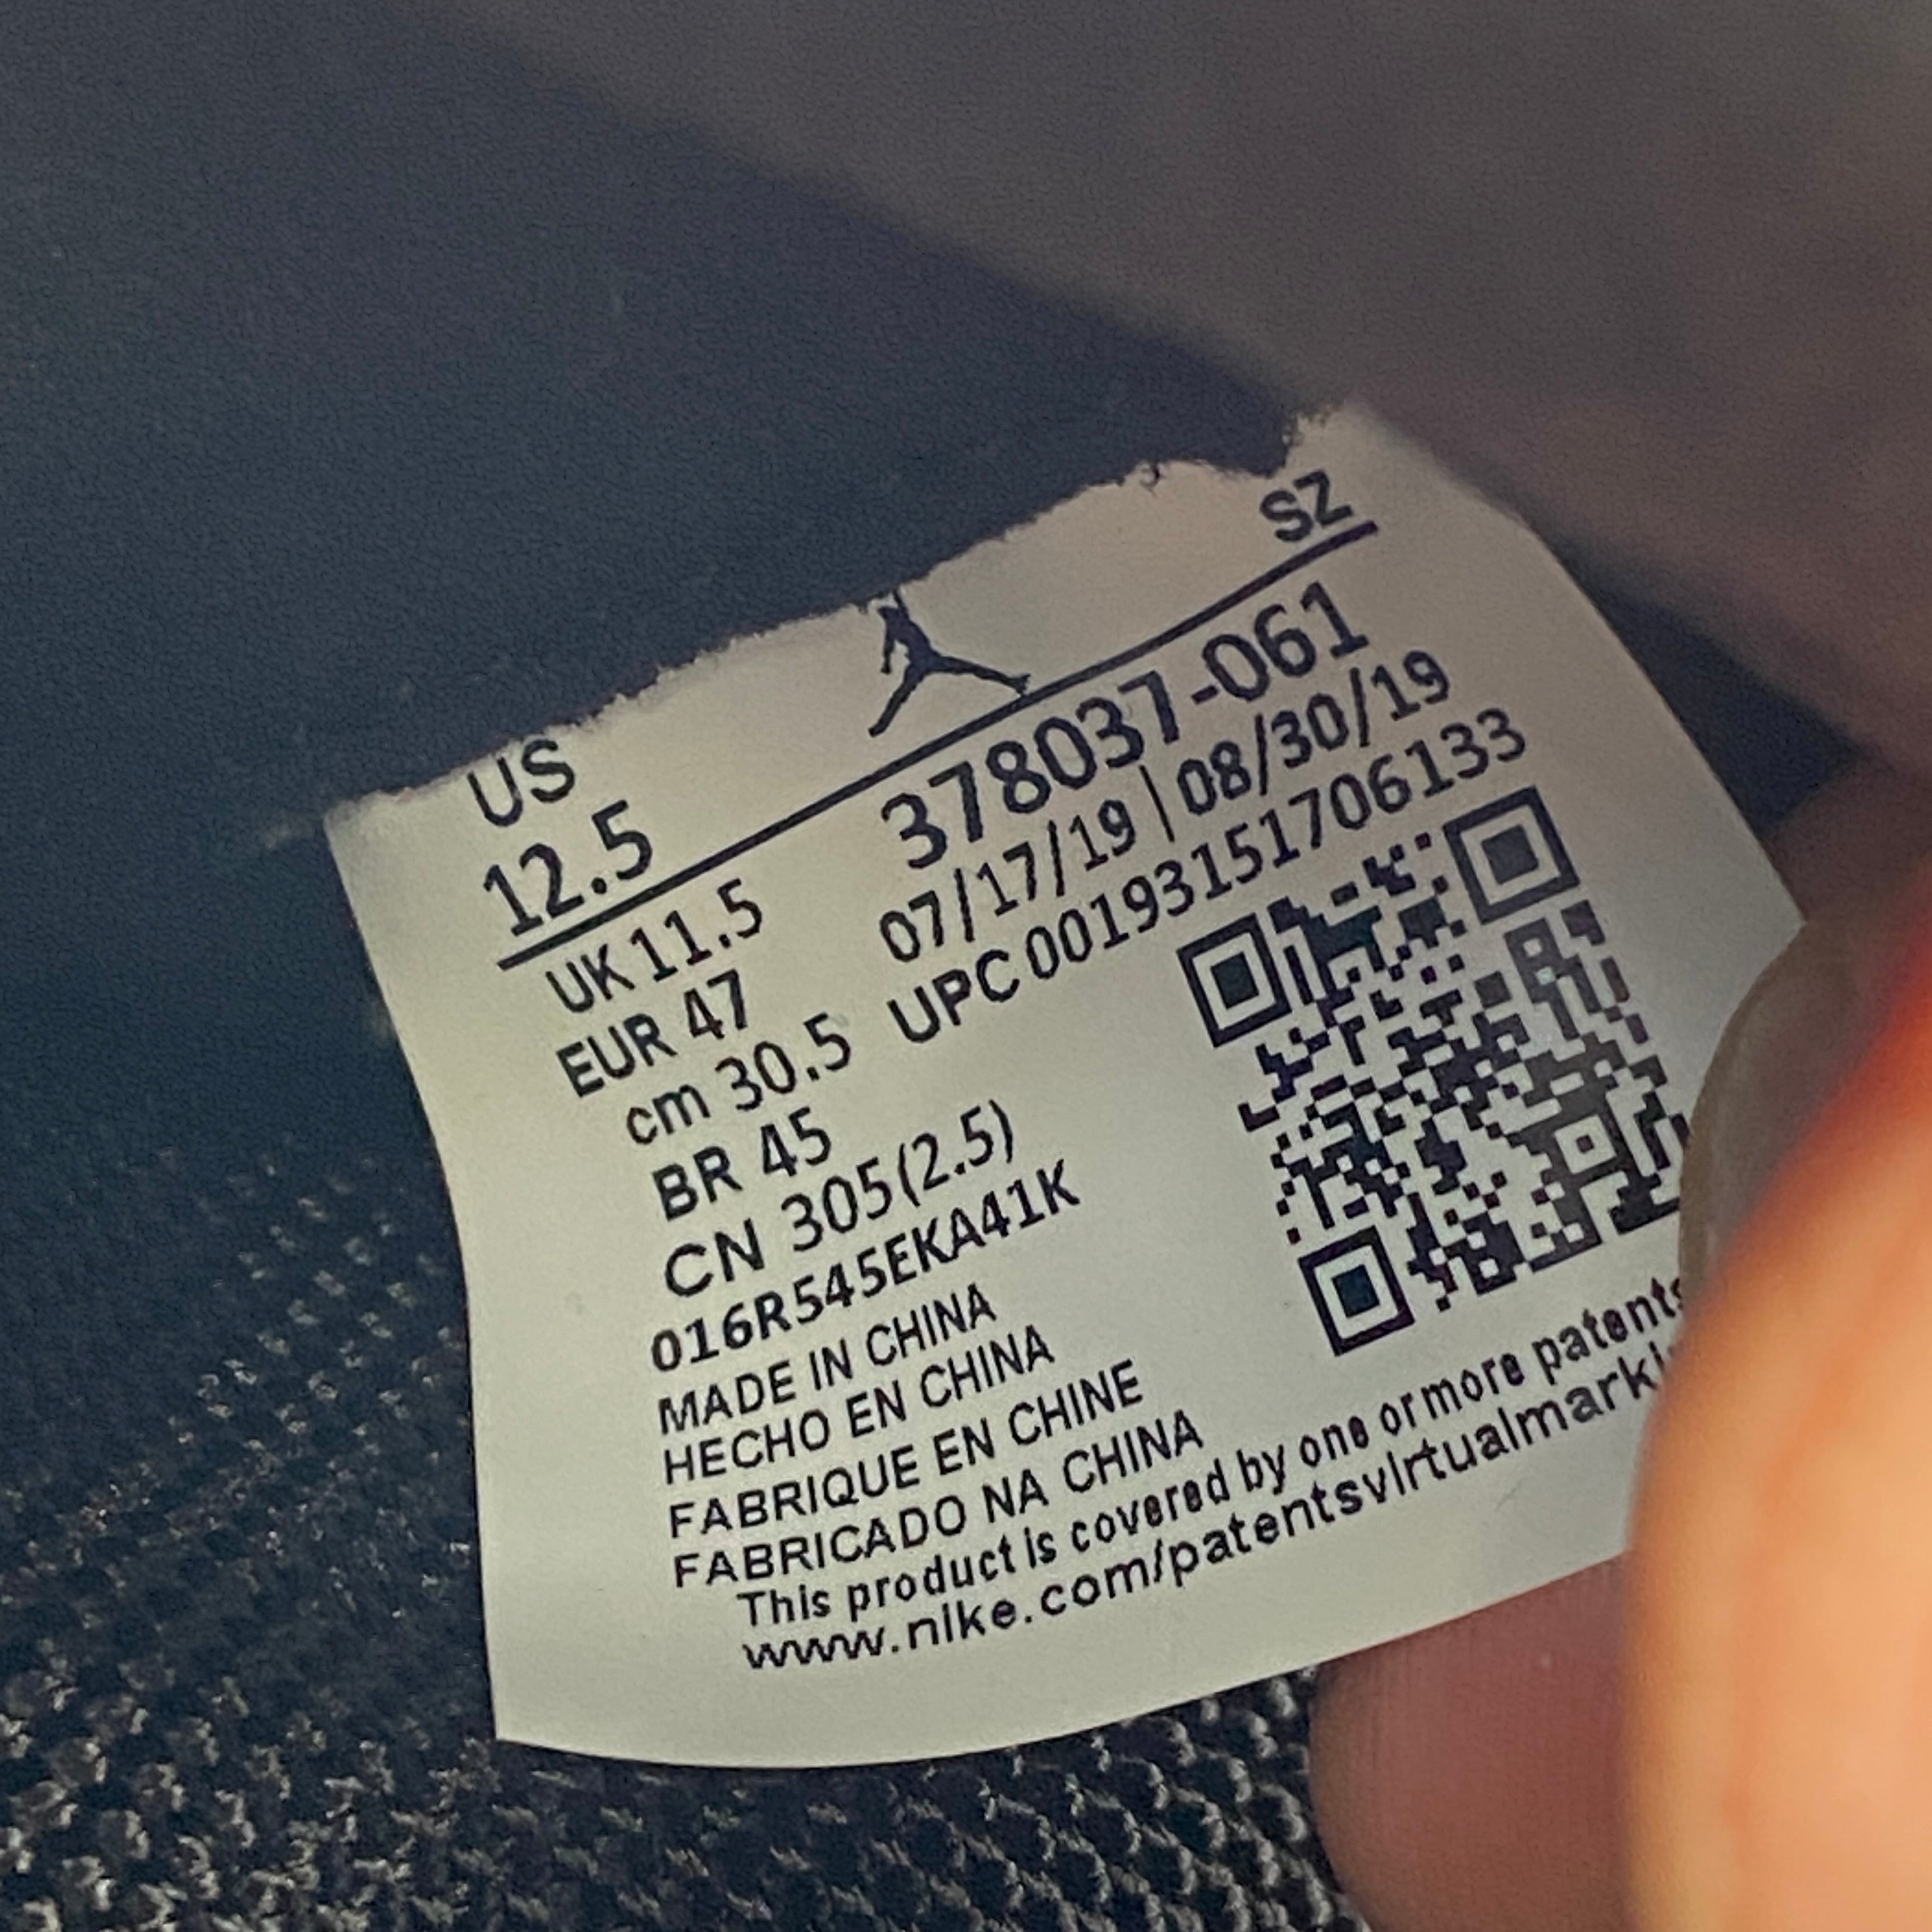 Air Jordan 11 Retro &quot;Bred&quot; 2019 New Size 12.5